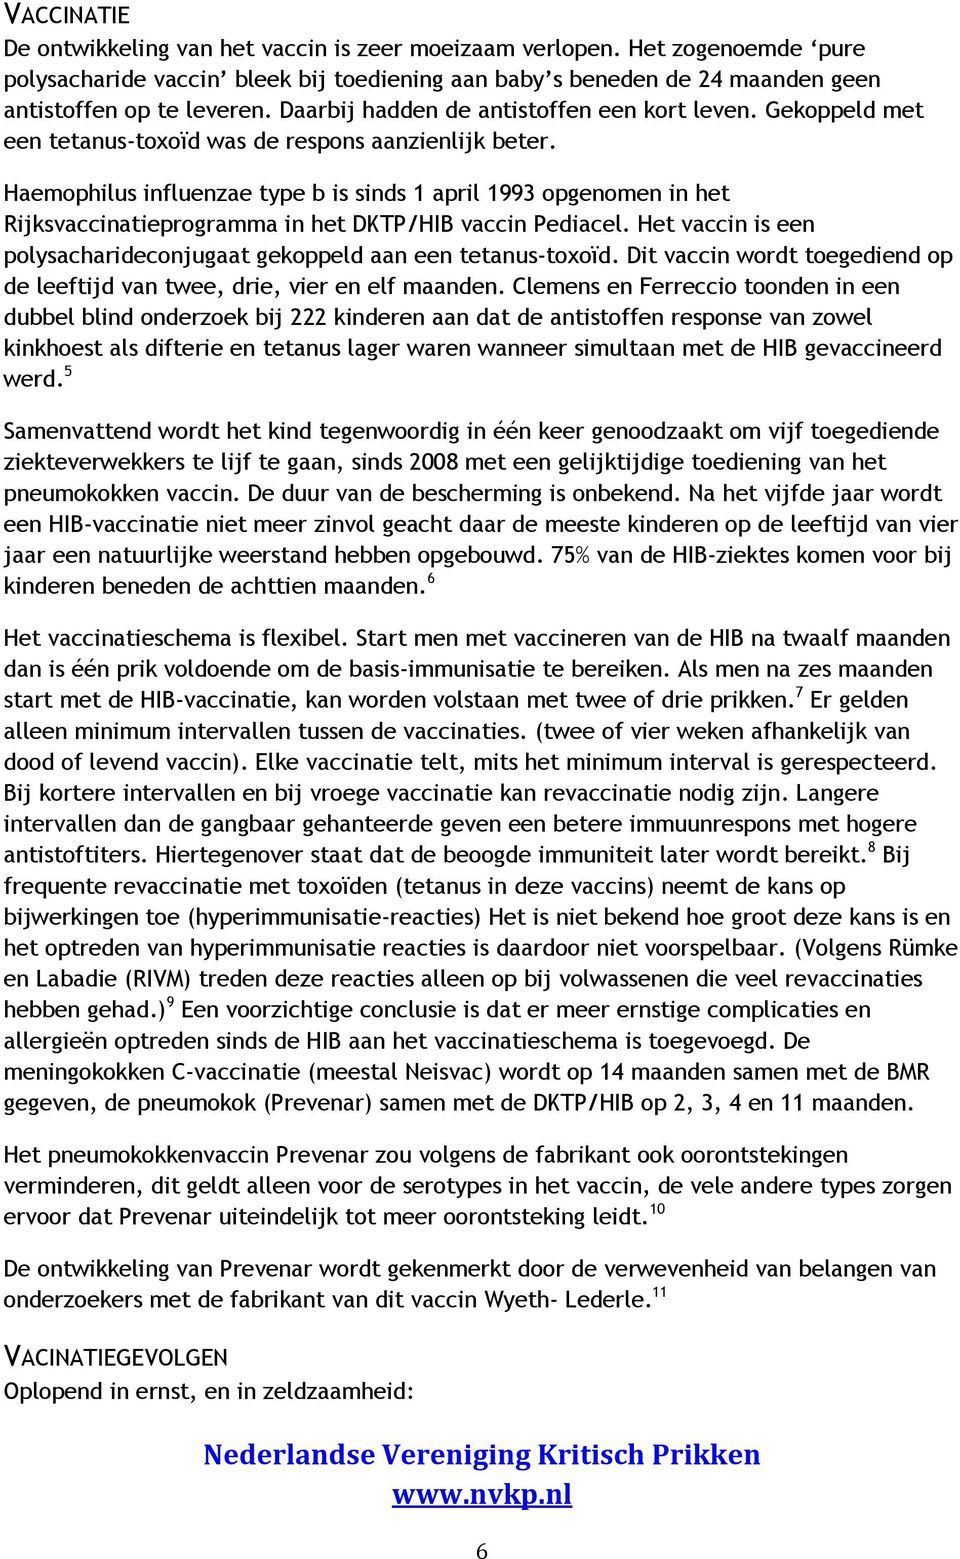 Haemophilus influenzae type b is sinds 1 april 1993 opgenomen in het Rijksvaccinatieprogramma in het DKTP/HIB vaccin Pediacel.